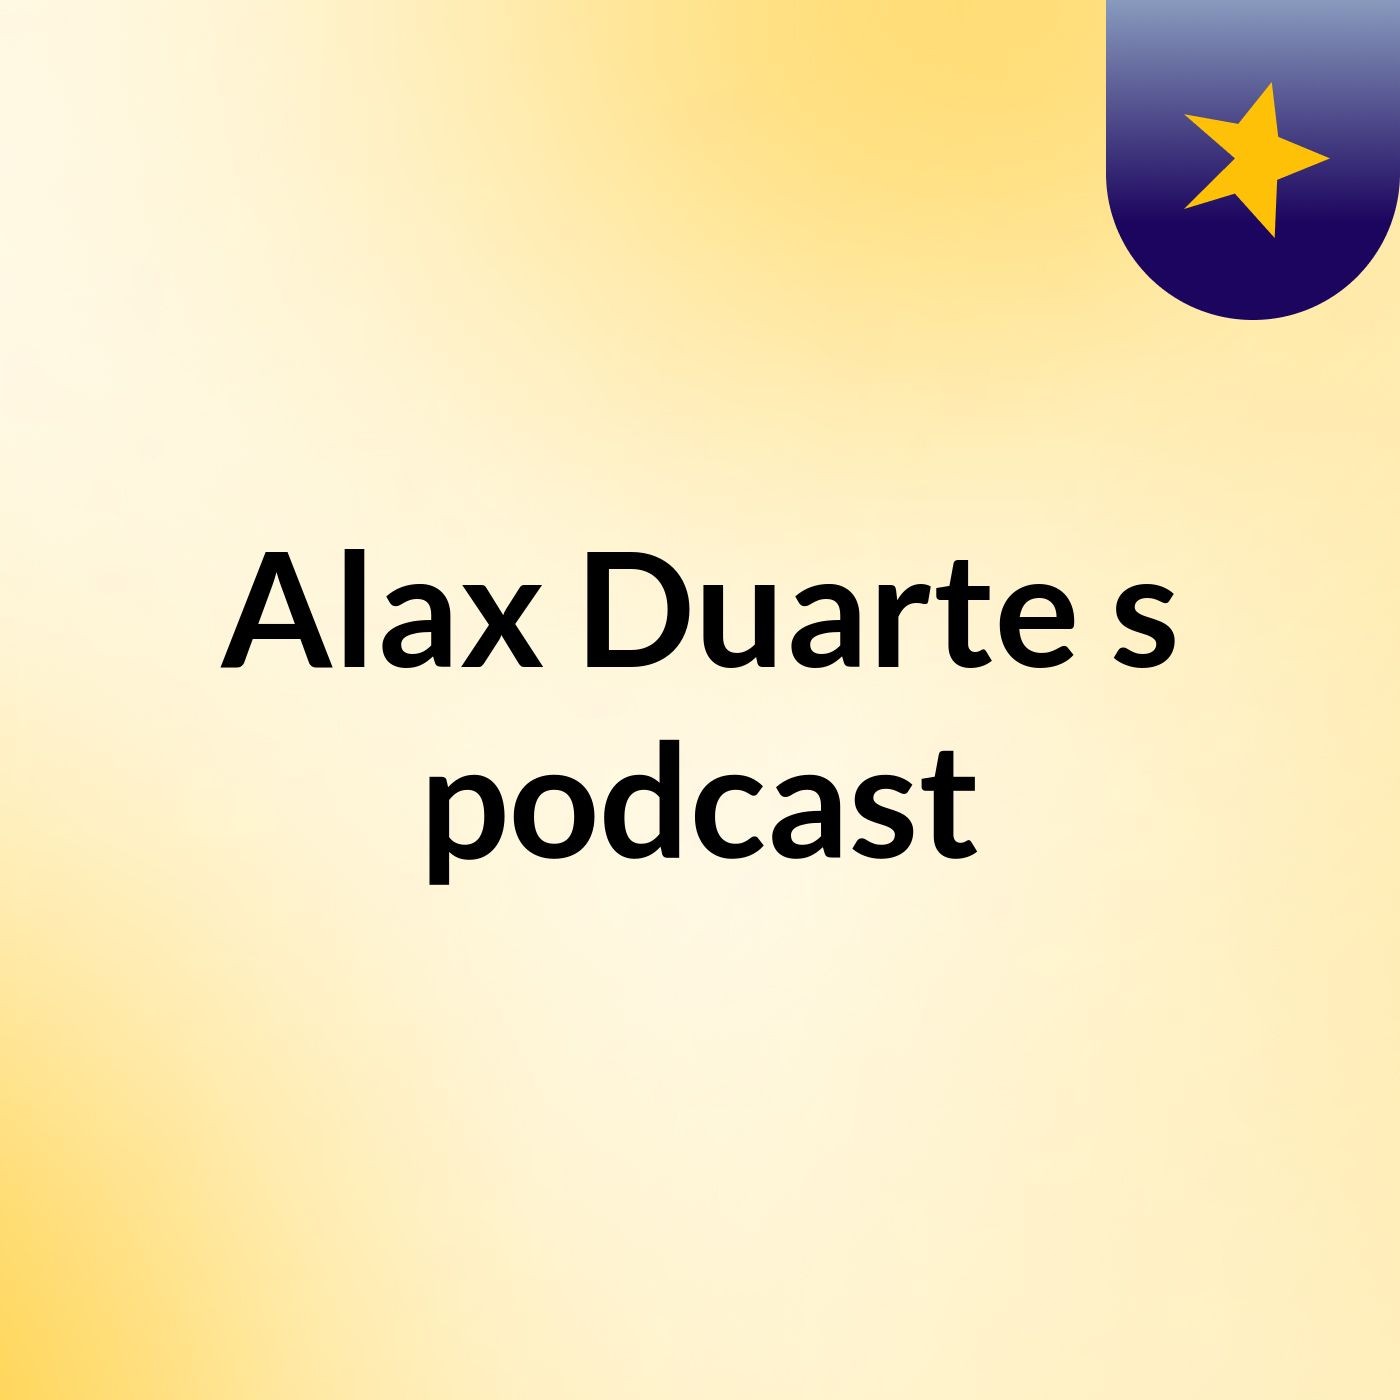 Alax Duarte's podcast